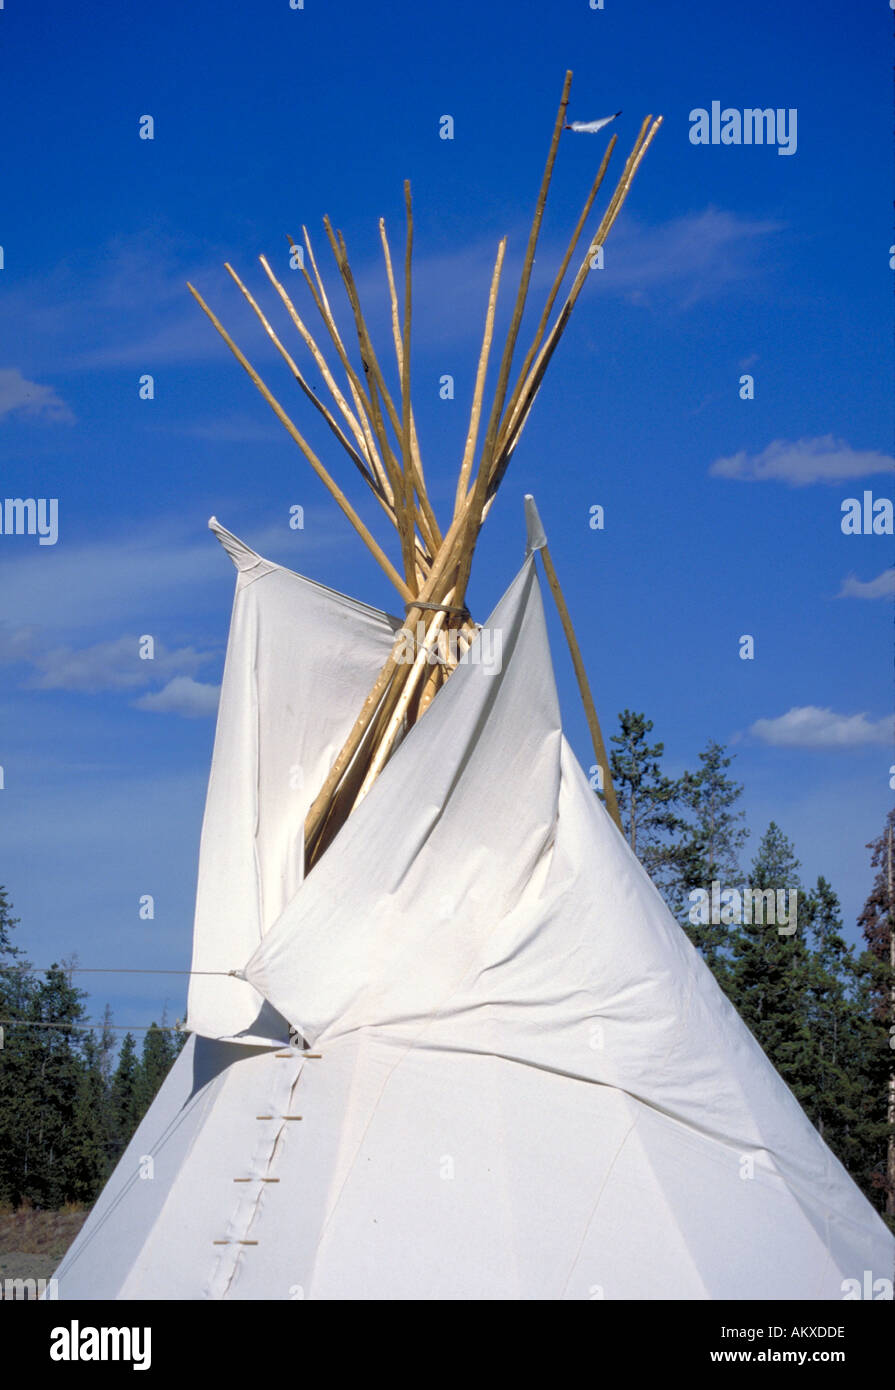 Un tepee indio americano con soportes de madera expuesta y se unió en la parte superior. Foto de stock